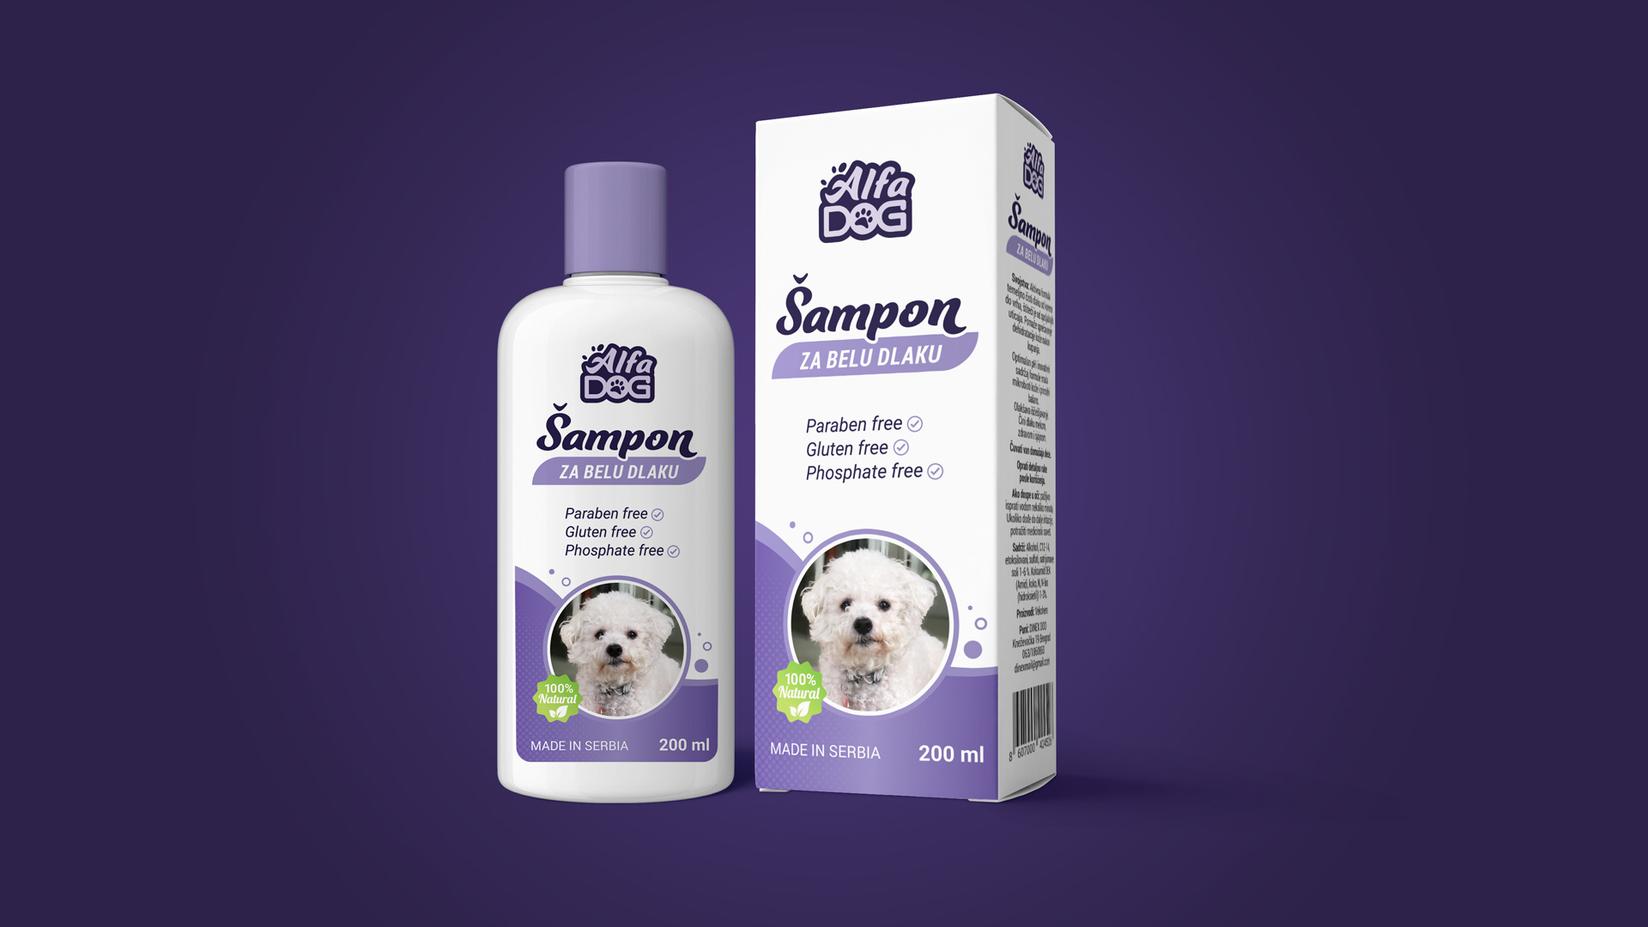 ALFA DOG Šampon za pse za belu dlaku 200ml